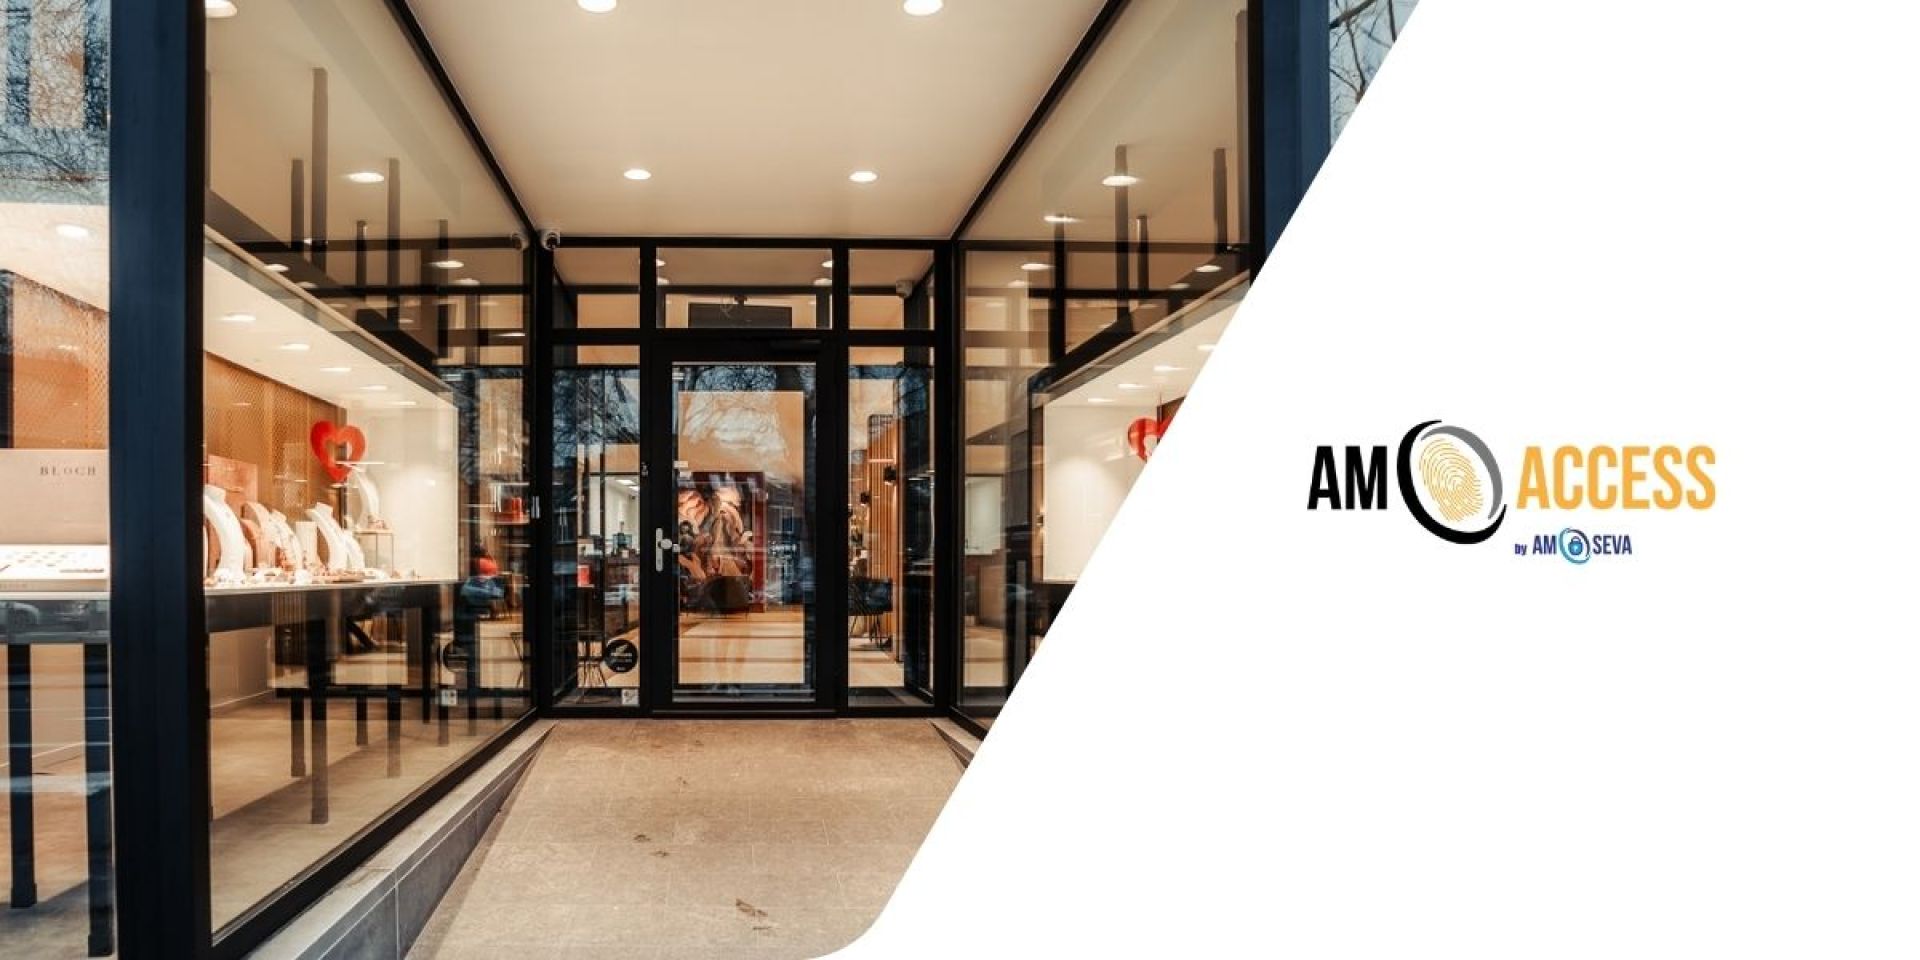 AM Access: Notre Nouveau site 100% dédié à la sécurisation des bâtiments